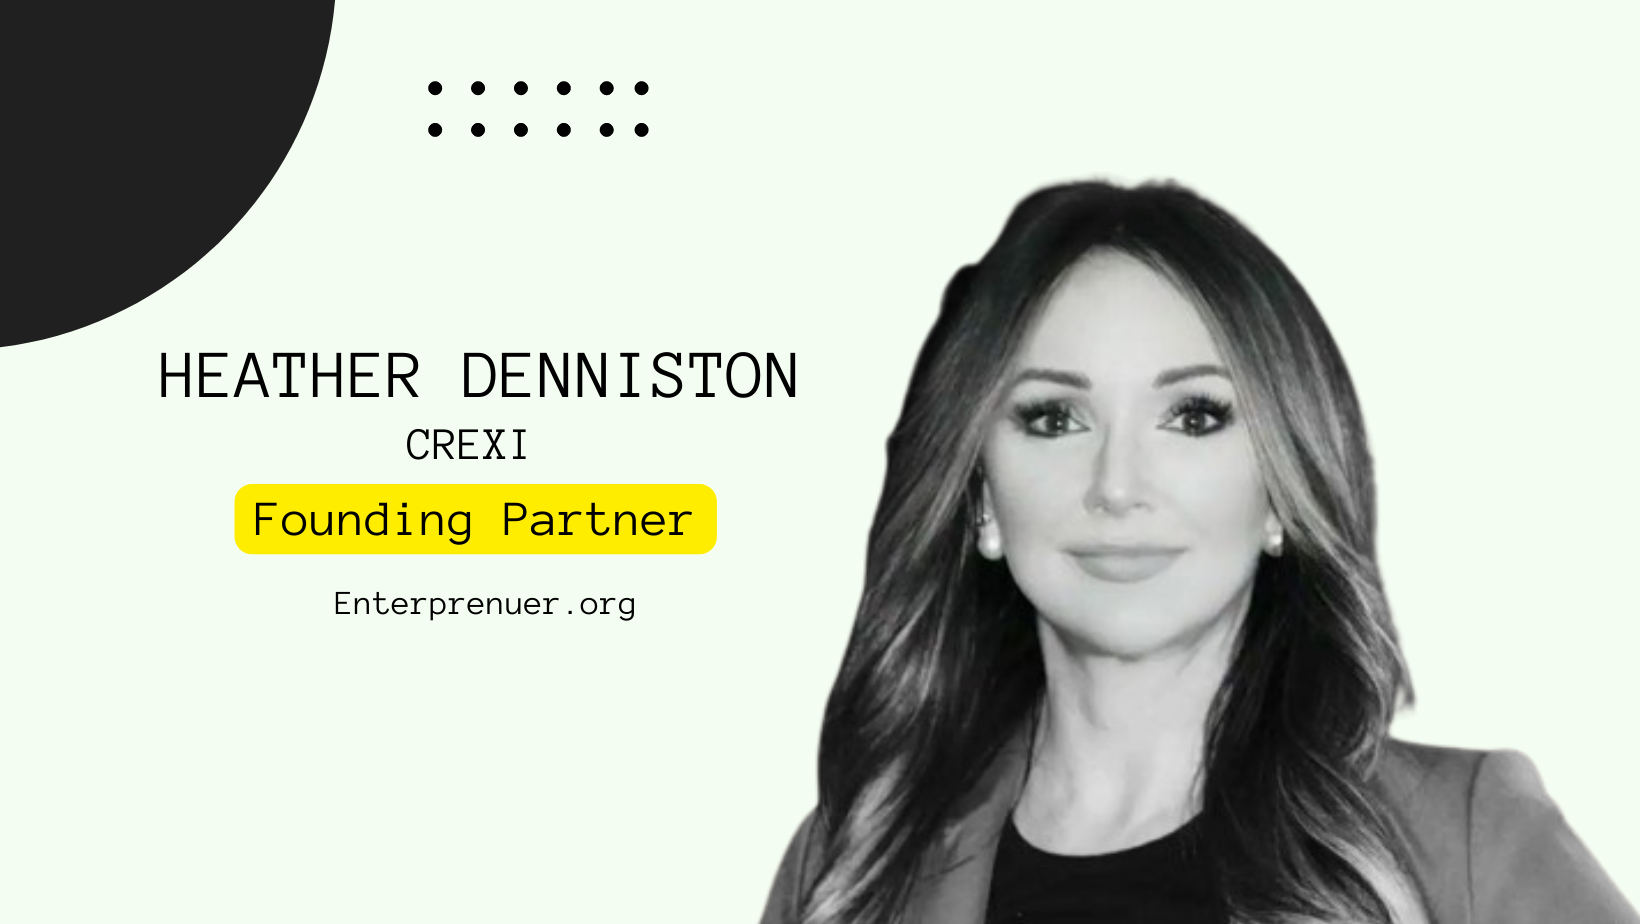 Heather Denniston Founding Partner at LUDEX